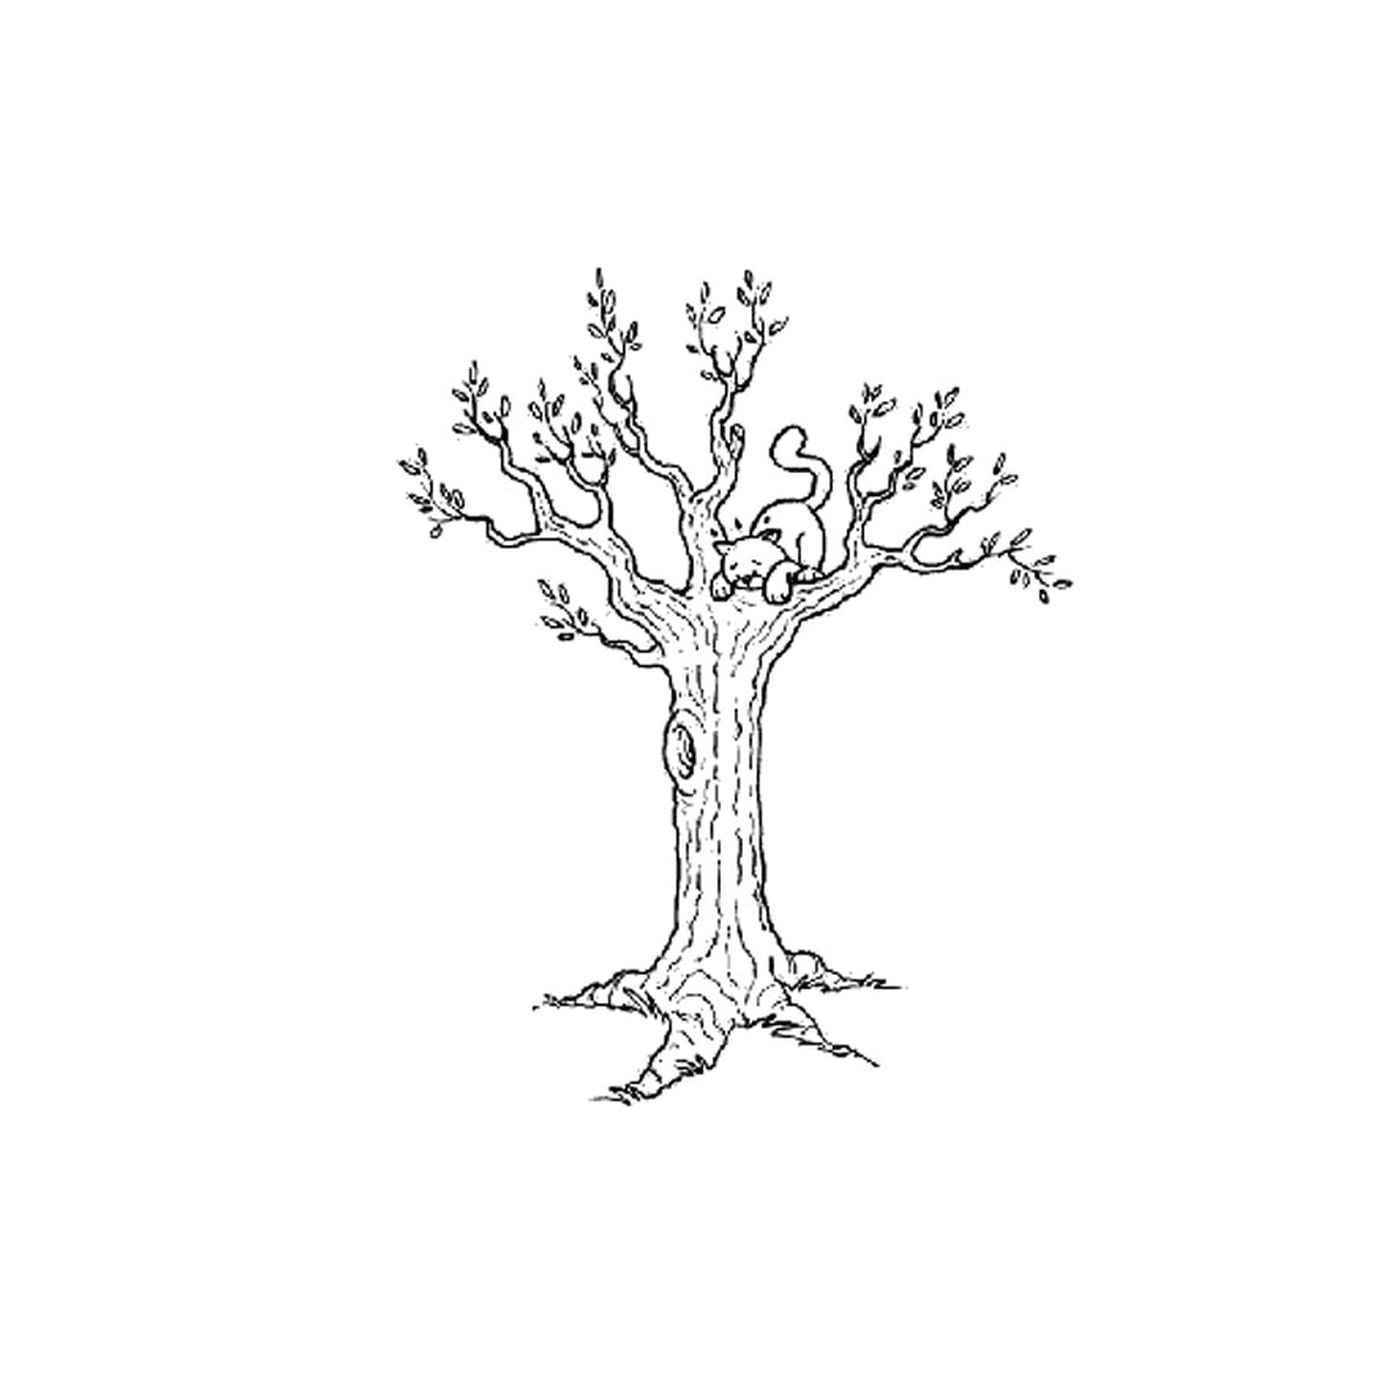  Una ardilla sentada en el tronco de un árbol 